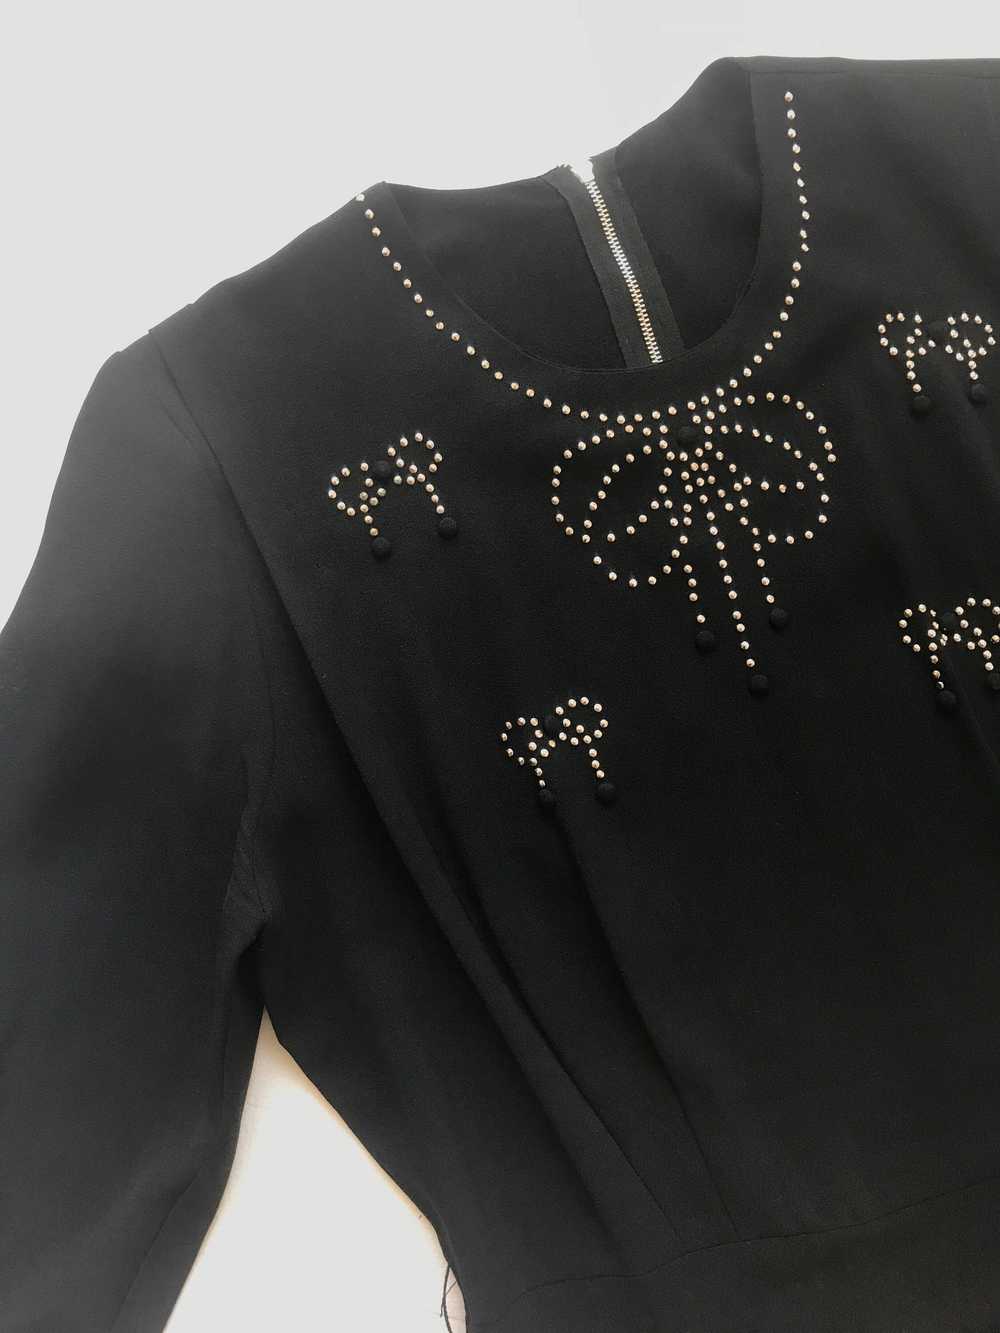 1940s Studded Black Crepe Rayon Dress - image 9